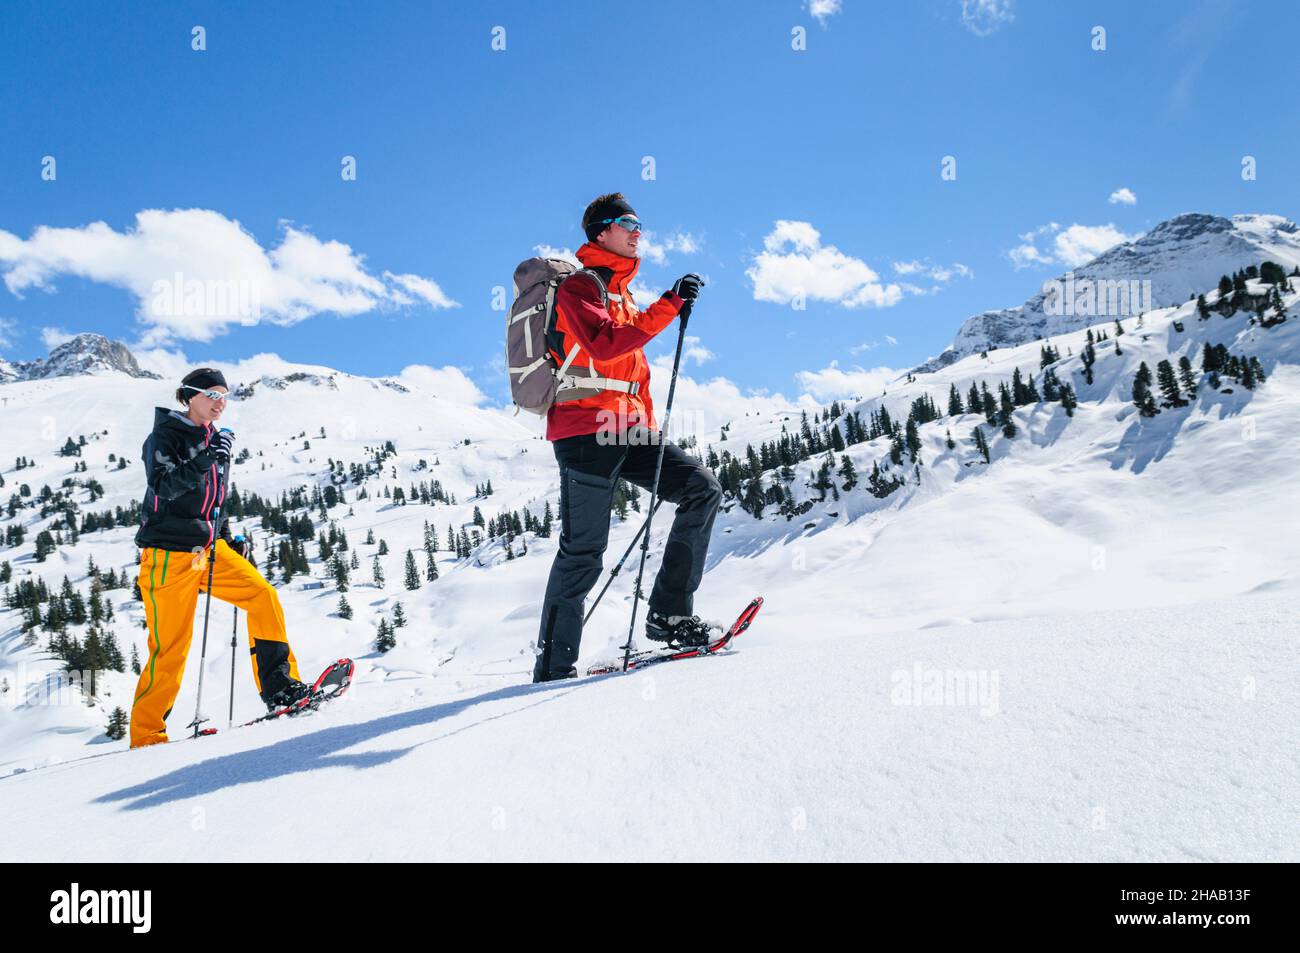 Zwei junge Leute unternehmen gemeinsam eine entspannte Tour auf Schneeschuhen nahe des Körbersees en VoraRelaxed tour con raquetas de nieve en la naturaleza invernal Foto de stock